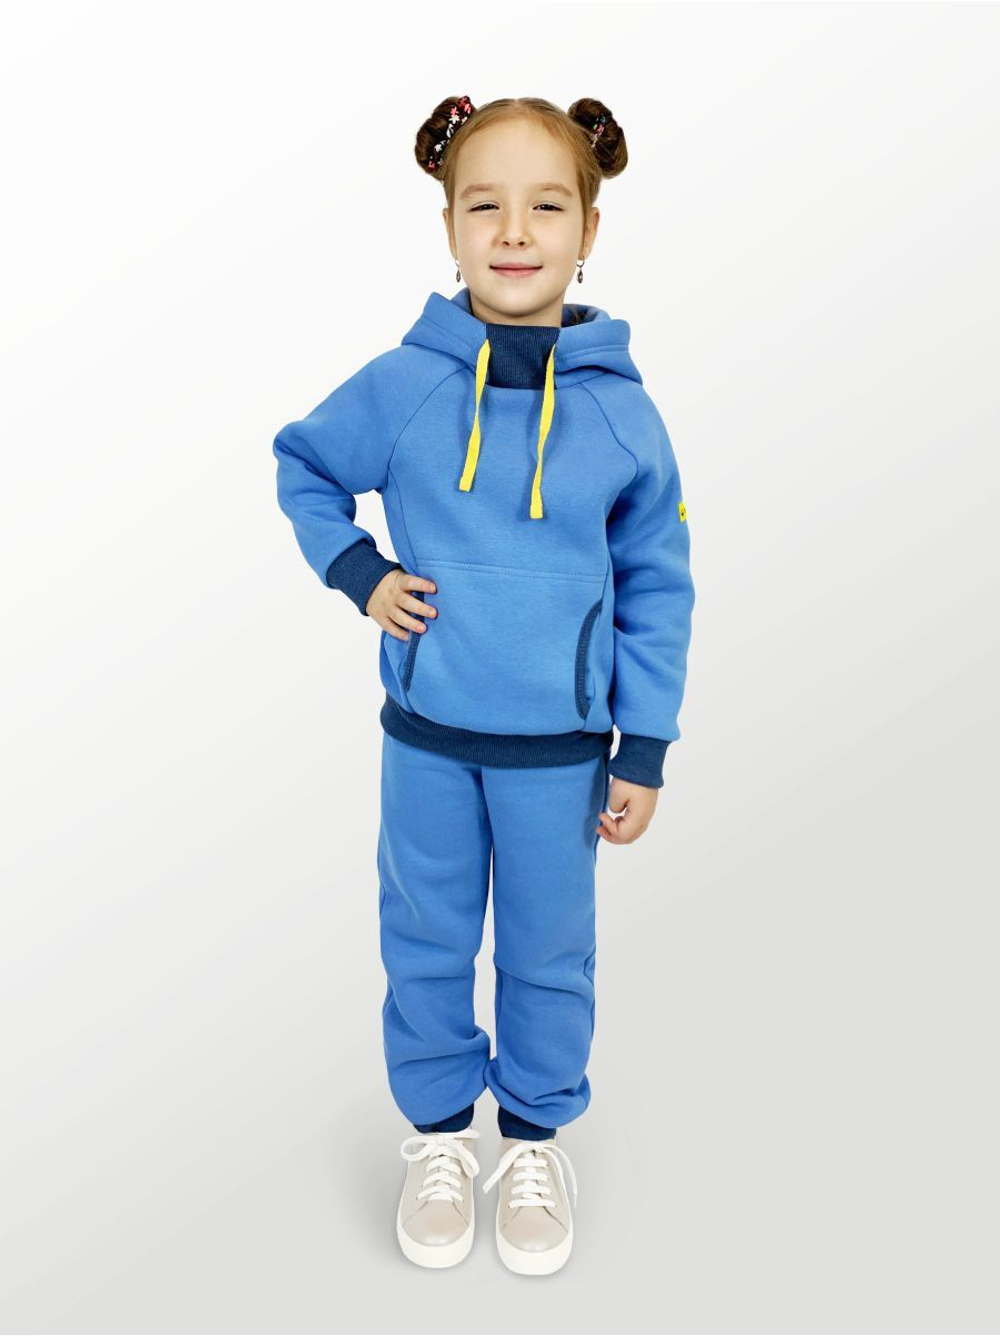 Худи для детей, модель №5, утепленный, рост 110 см, голубой